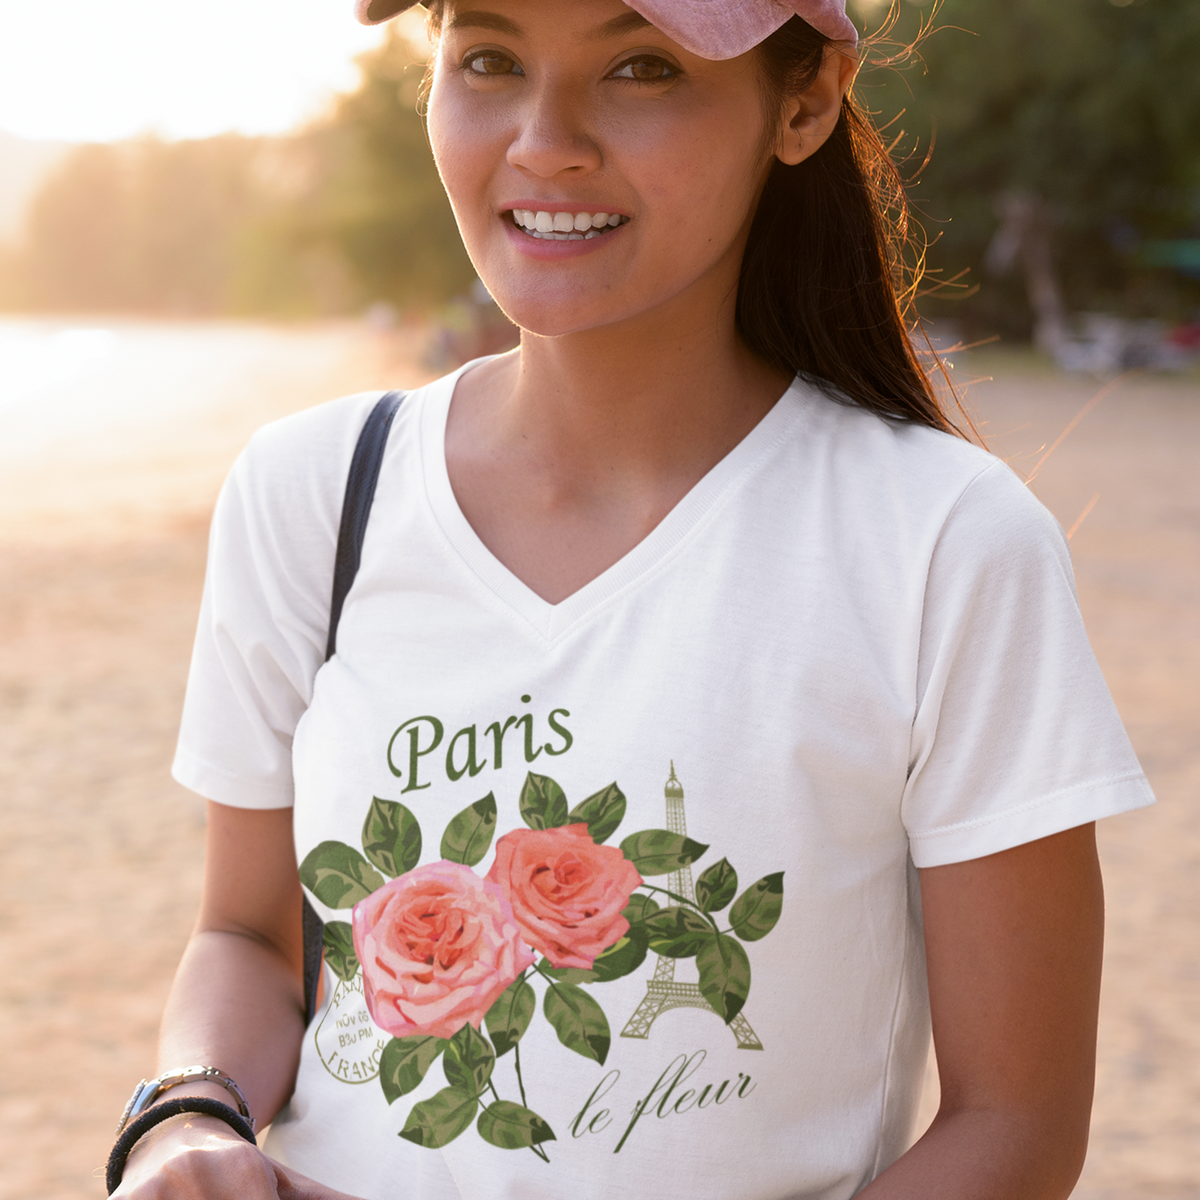 Paris France Vintage Rose Shirt | World Traveler Gardening Gift | White V-neck T-shirt